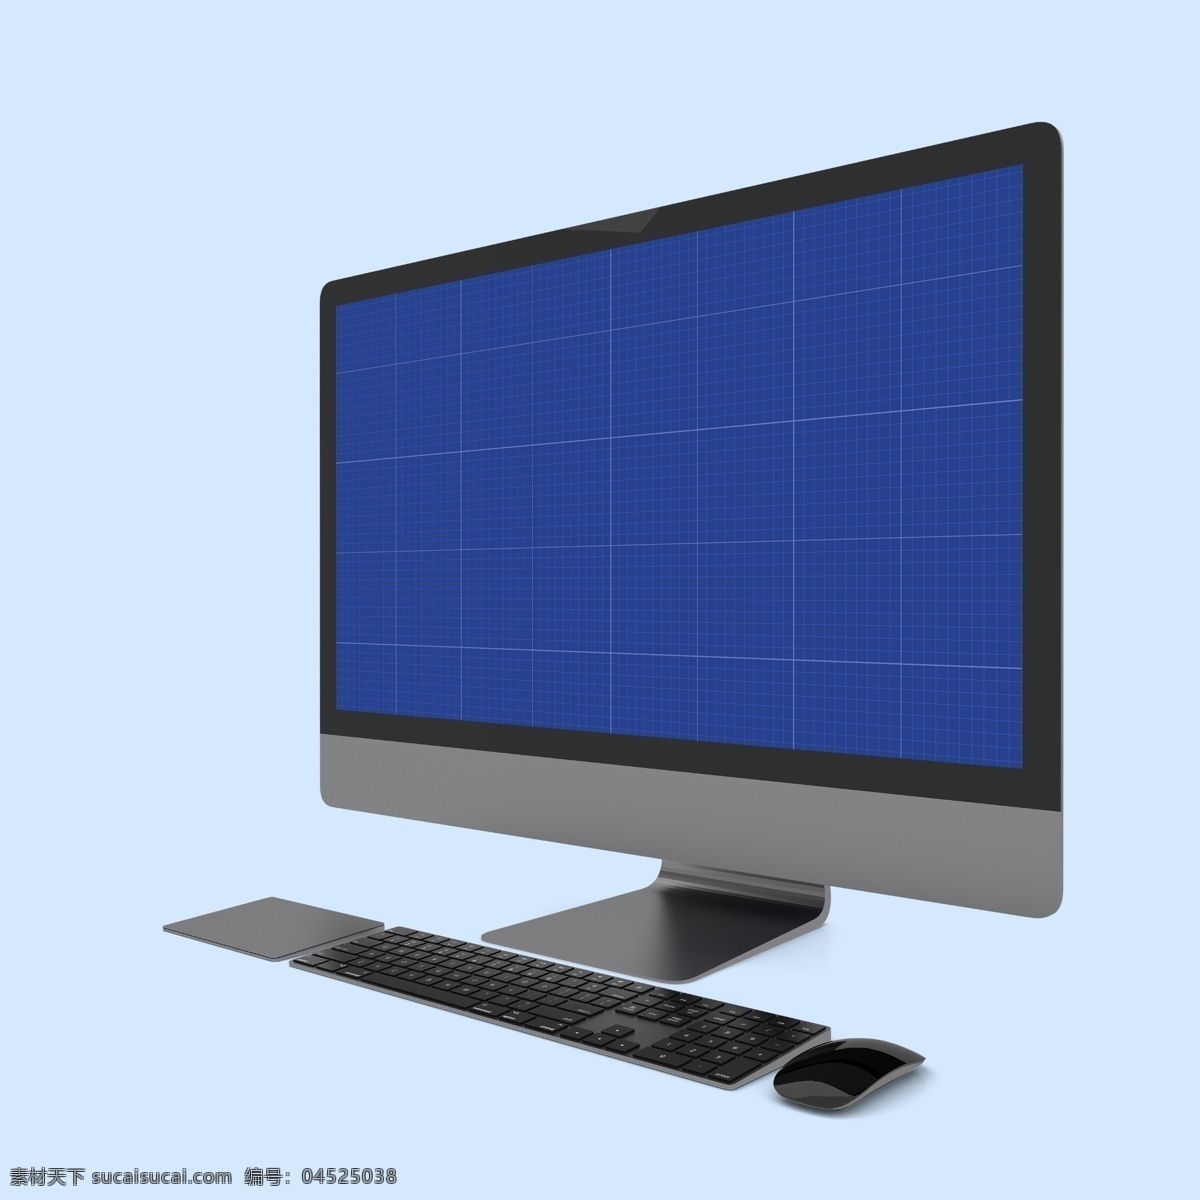 电脑 屏幕 图案 样机 电脑屏保 笔记本 苹果电脑 电脑显示 电脑屏幕 屏保 产品效果图 vi设计